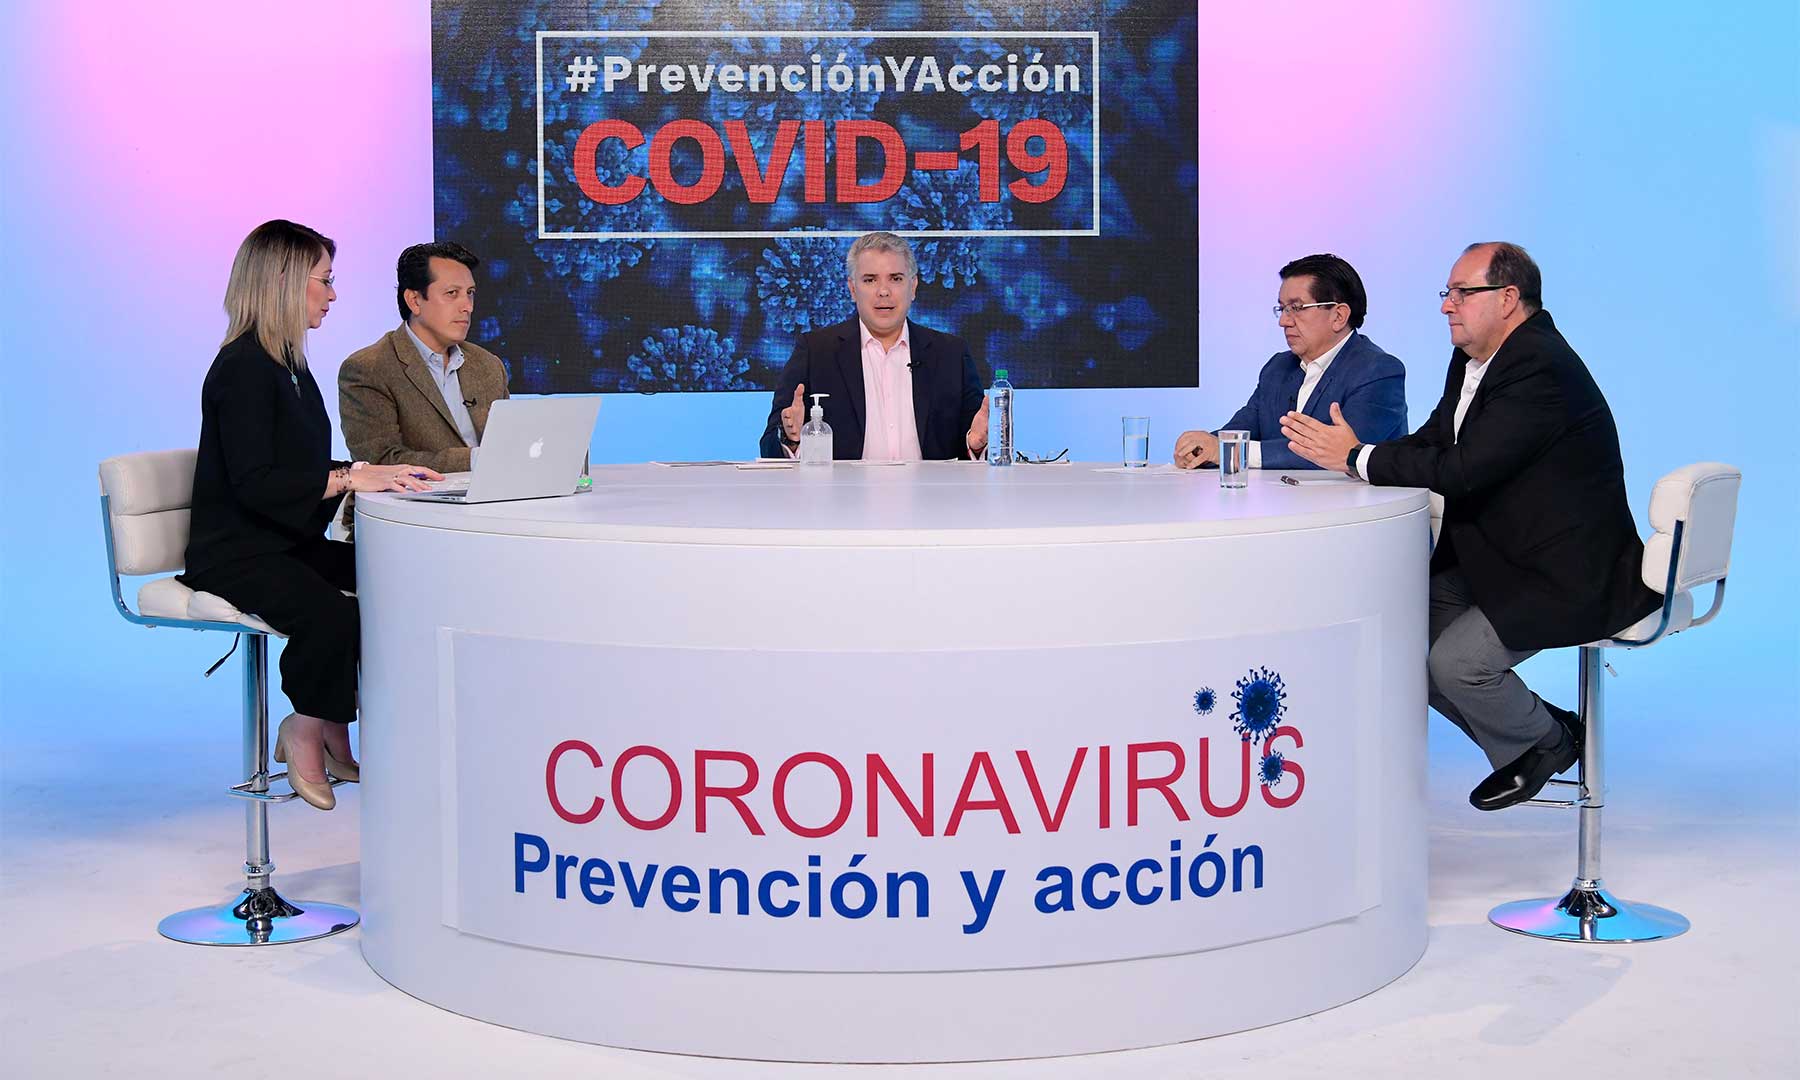 Coronavirus, COVID-19, salud, virus, pandemia, OMS, Iván Duque, Presidente Duque, Presidencia de Colombia, Presidencia de la Rep